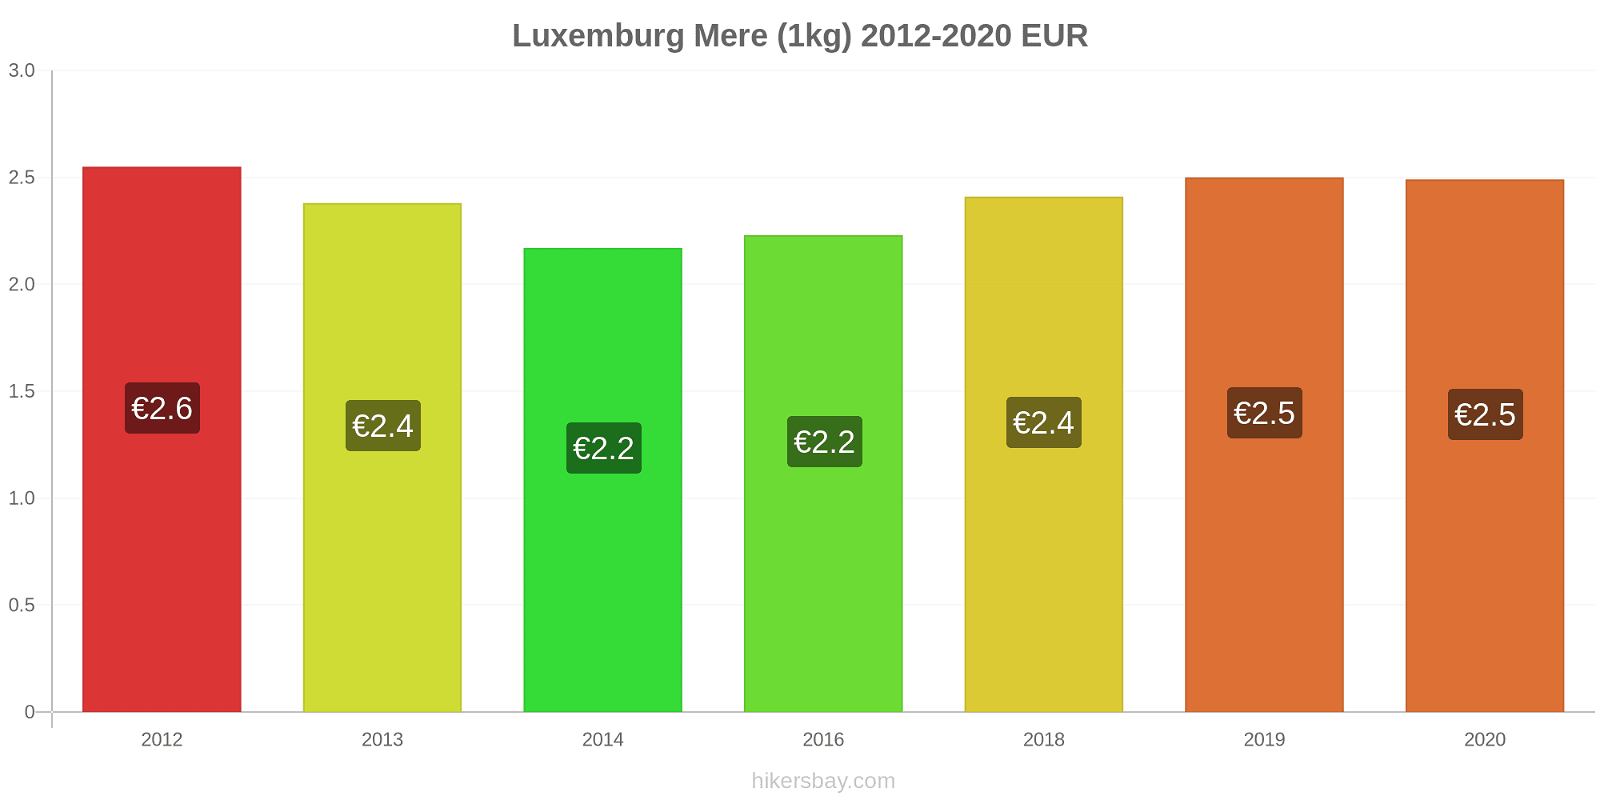 Luxemburg modificări de preț Mere (1kg) hikersbay.com